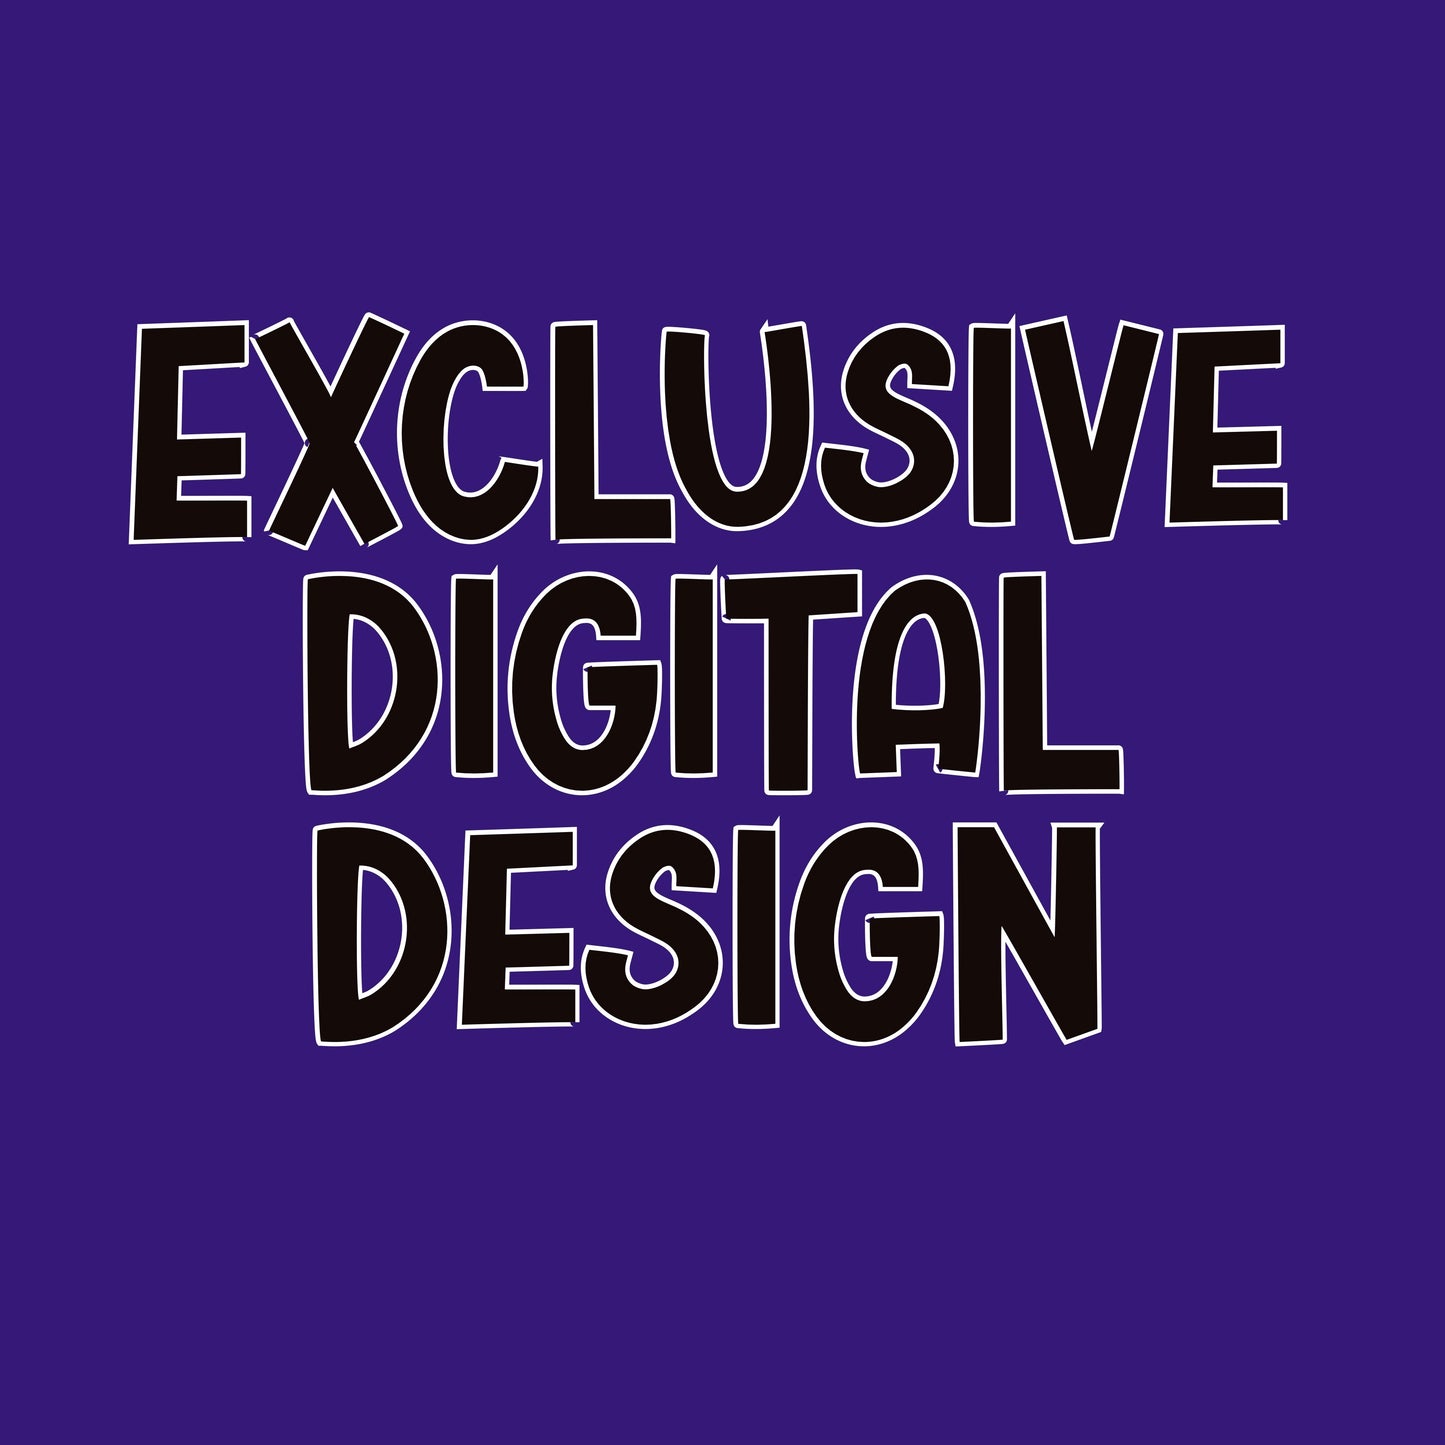 Exclusive Digital Design